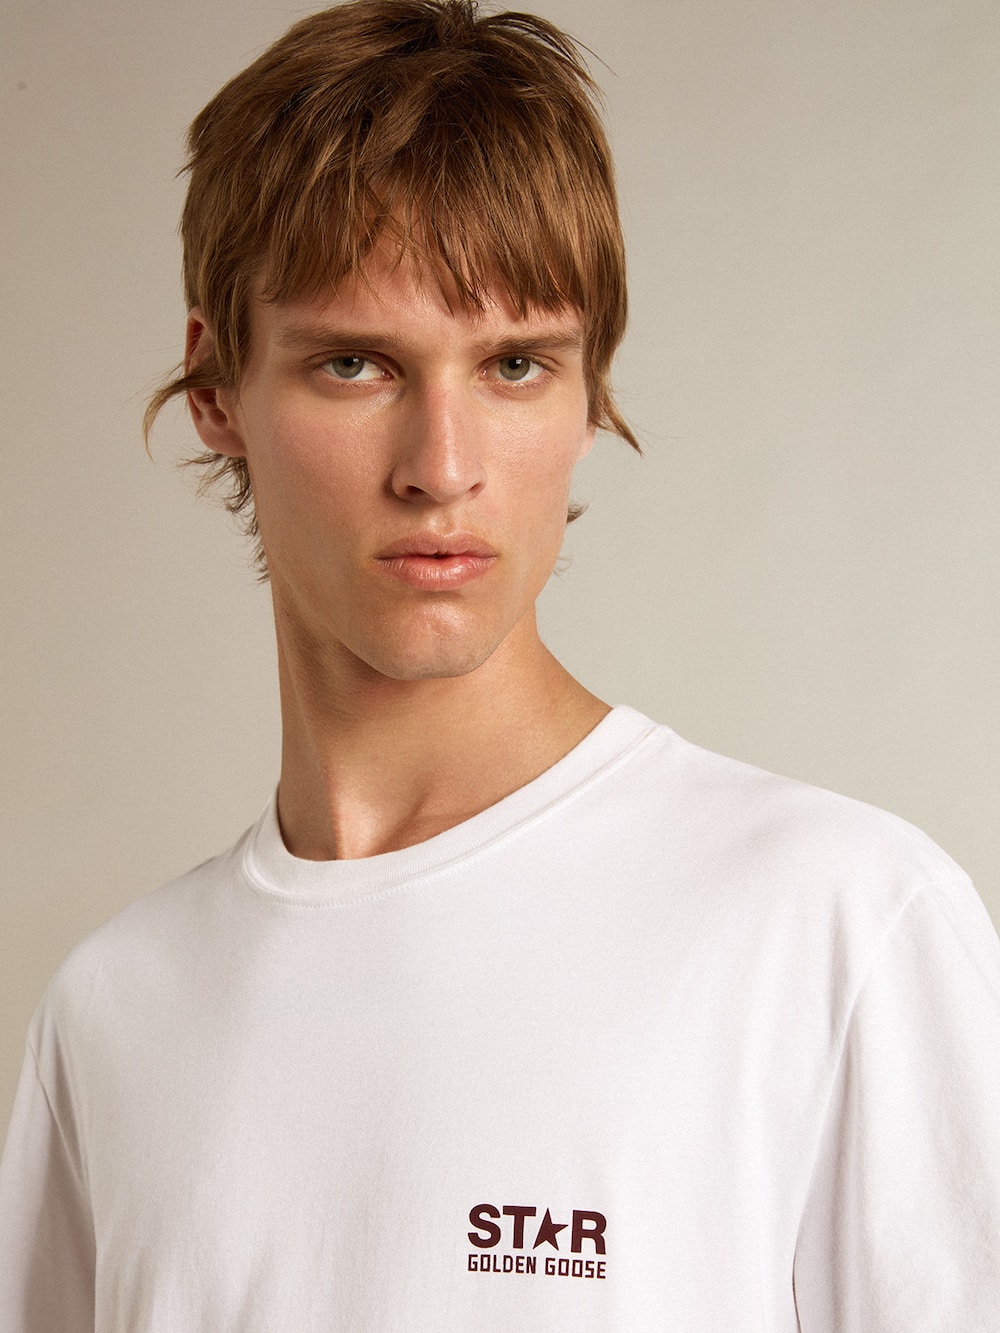 Golden Goose - T-shirt blanc pour homme avec logo et étoile bordeaux contrastés in 